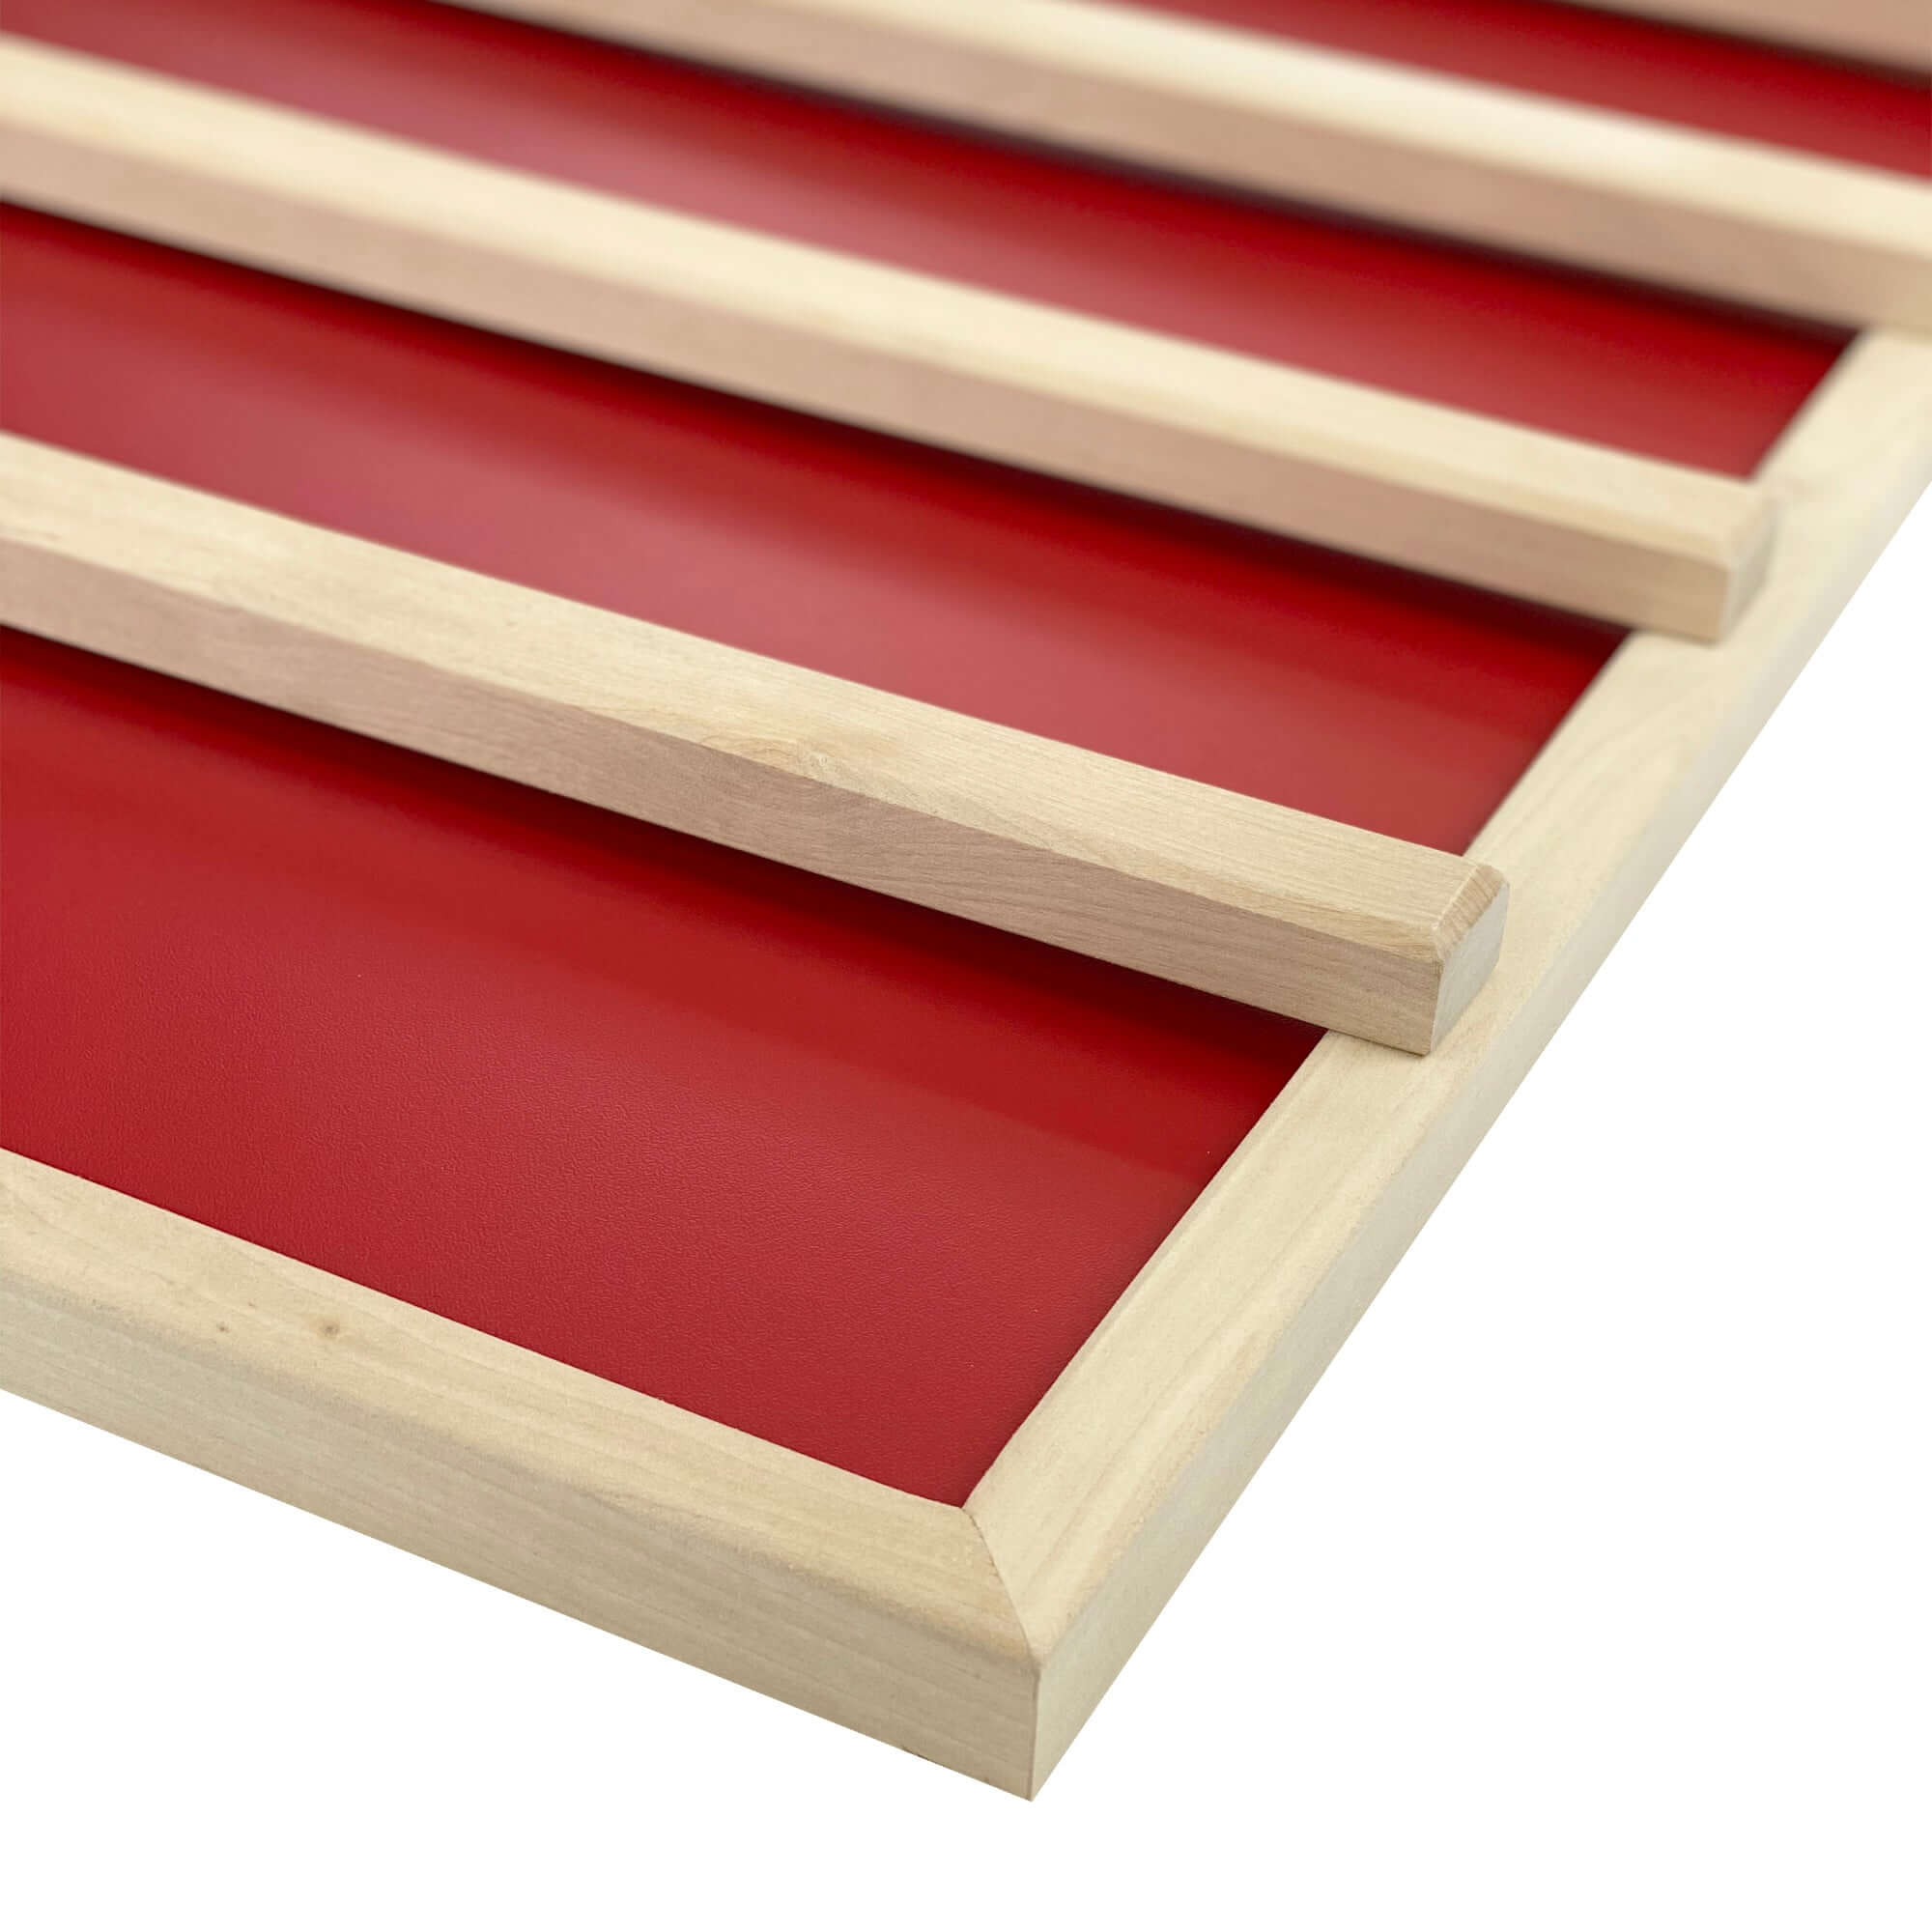 Infrarot-Platte Sauna P2 Rot mit Holzrahmen und Anlehnleisten - artvion